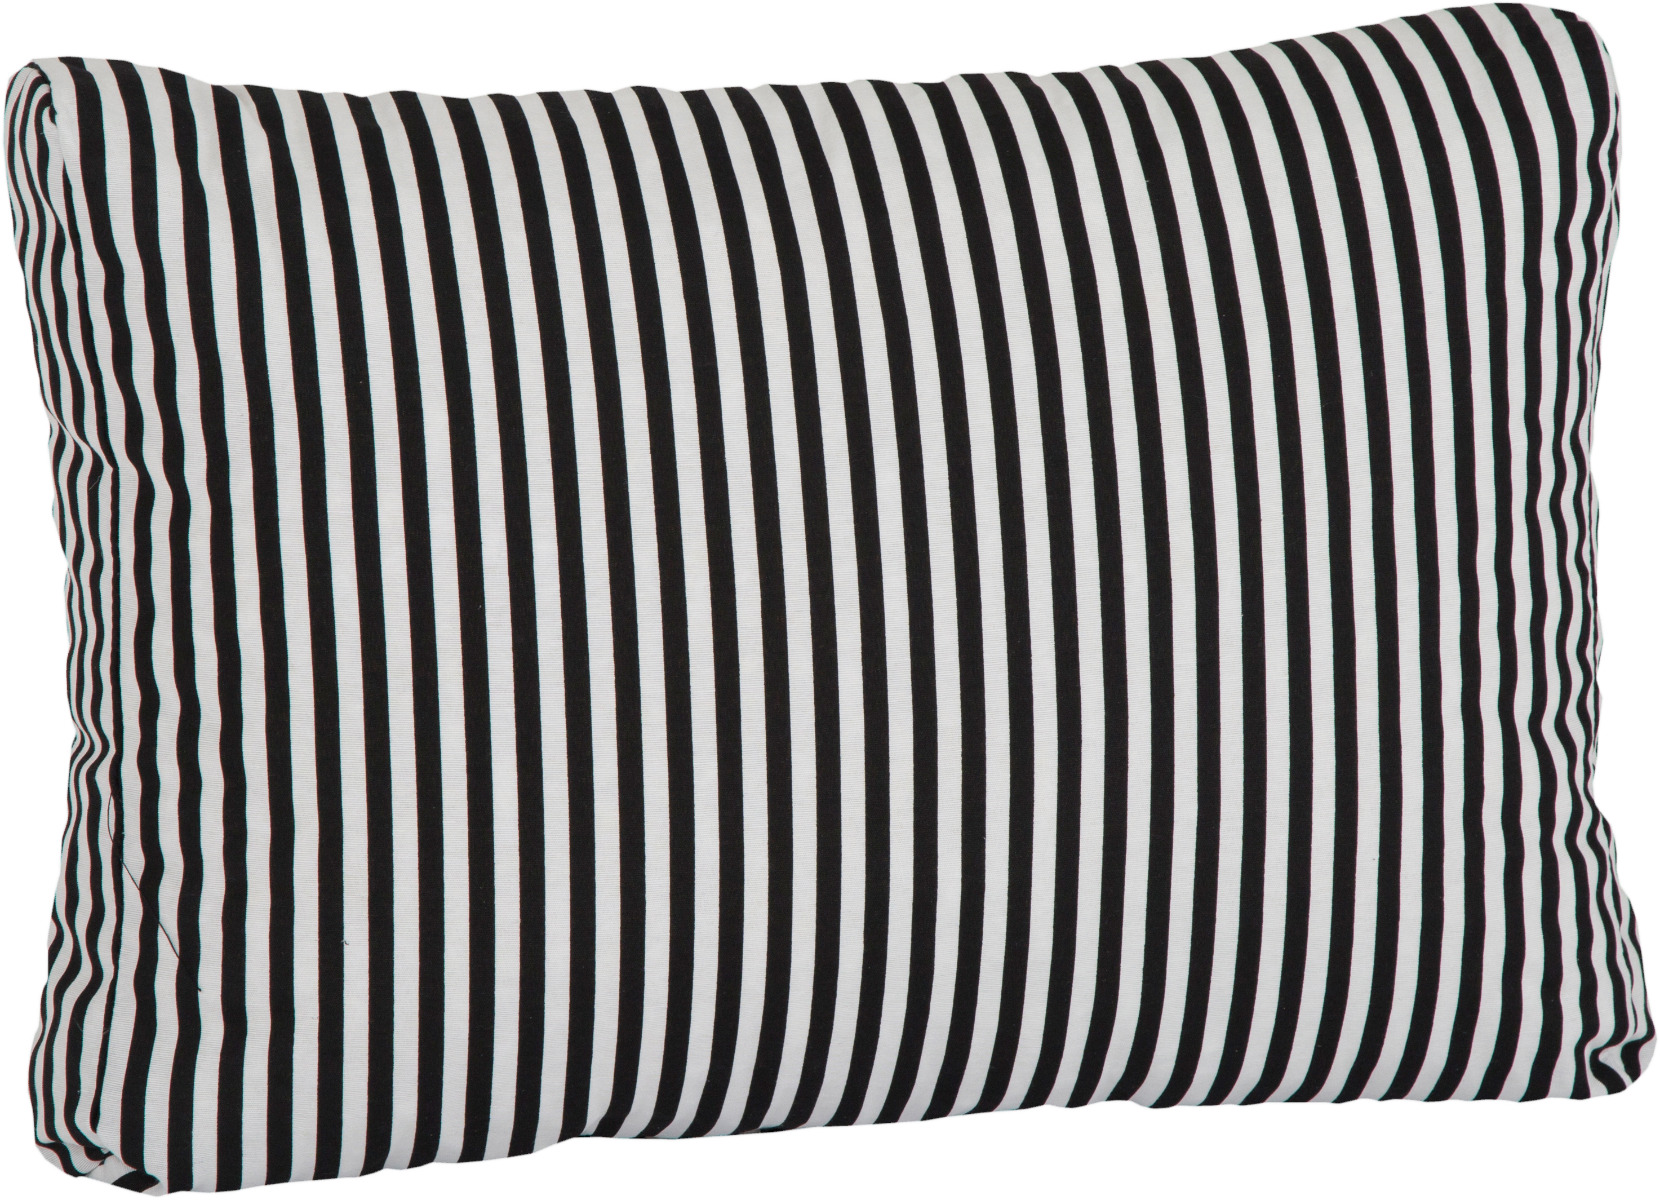 Skandinavischer Streifen Lounge Rückenkissen für Rattan Gartenmöbel 60 x 40 cm schwarz weiss